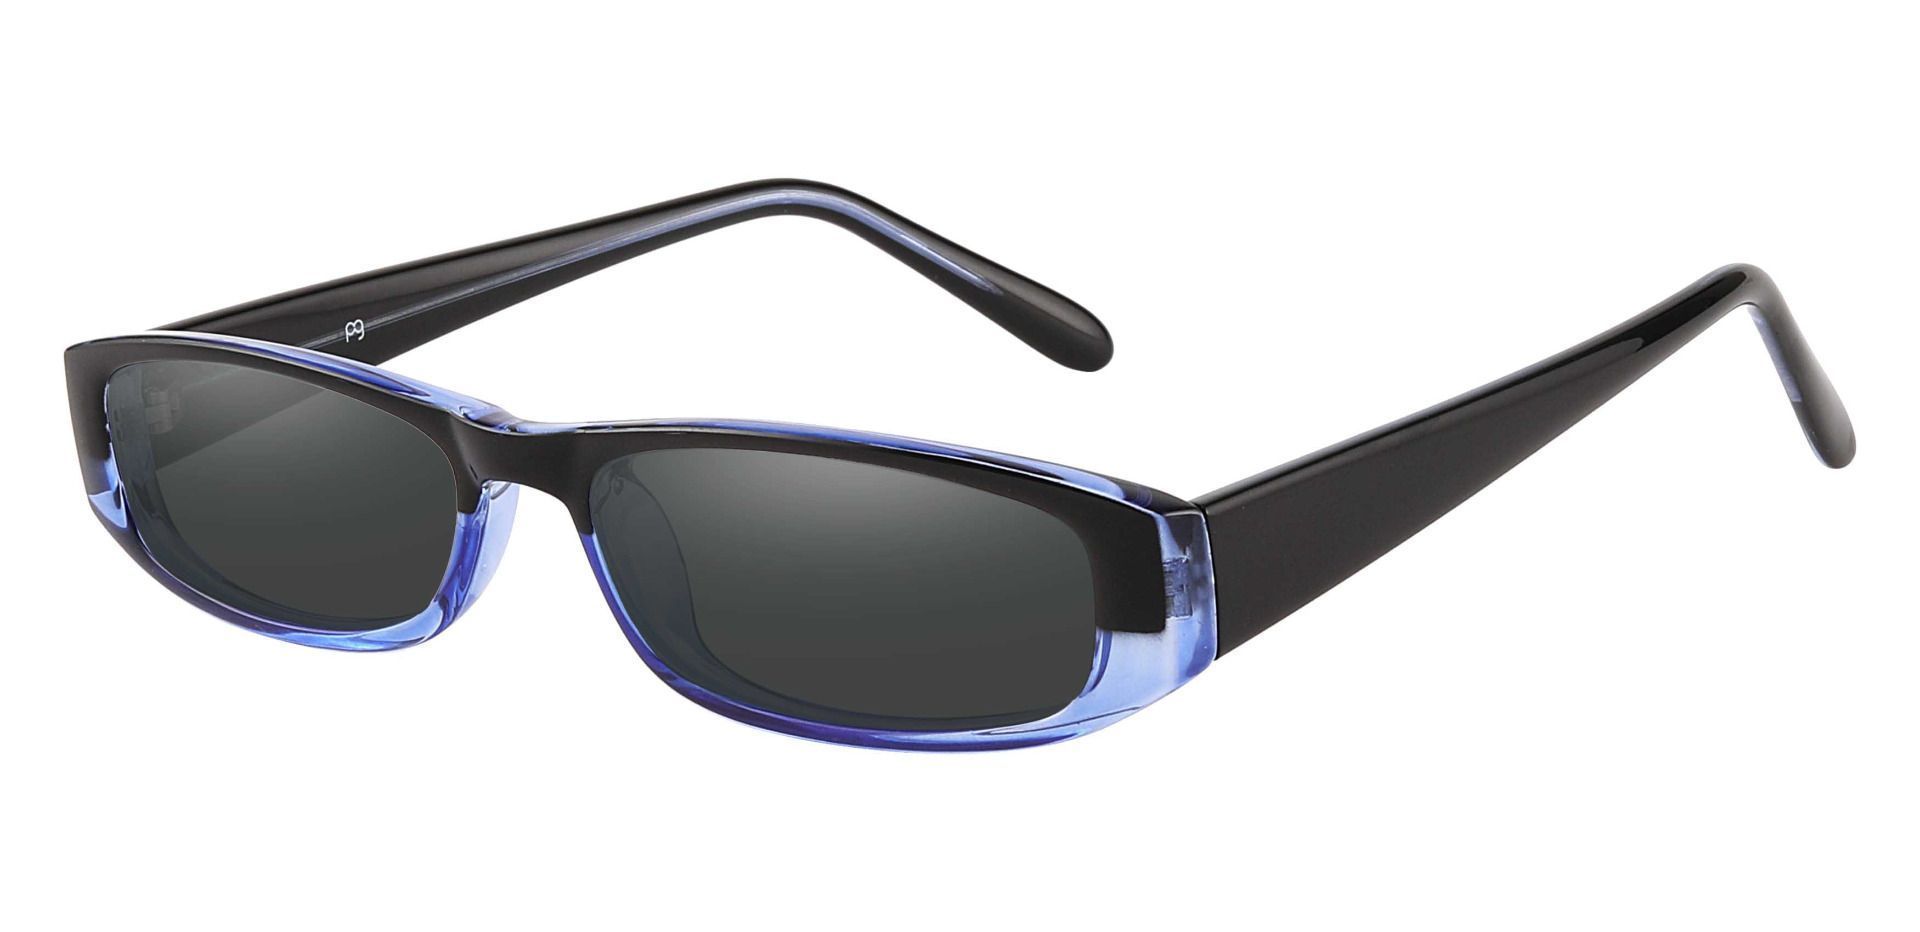 Elgin Rectangle Reading Sunglasses - Blue Frame With Gray Lenses